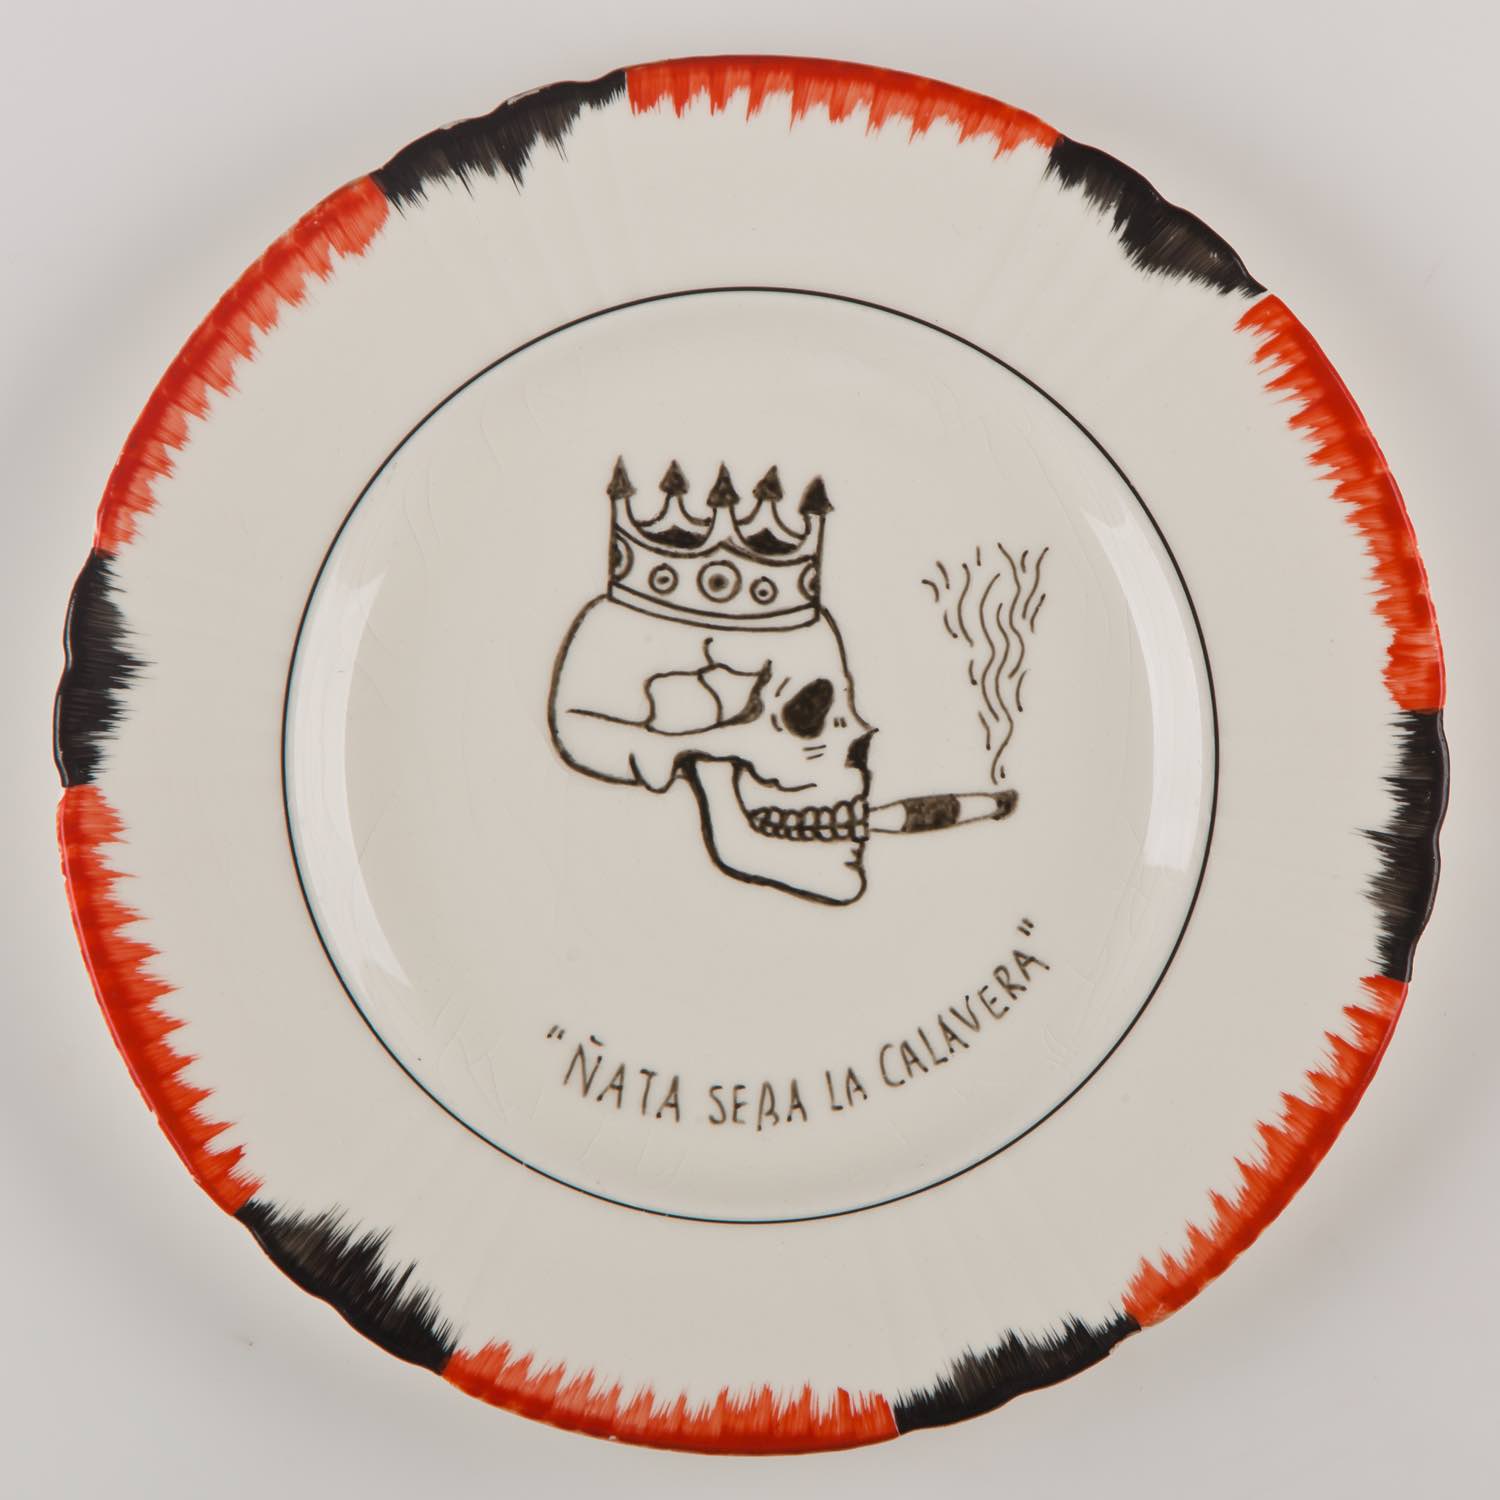   "Ñata será la calavera"   Esmalte sobre plato antiguo 25 cm diámetro. 2012    